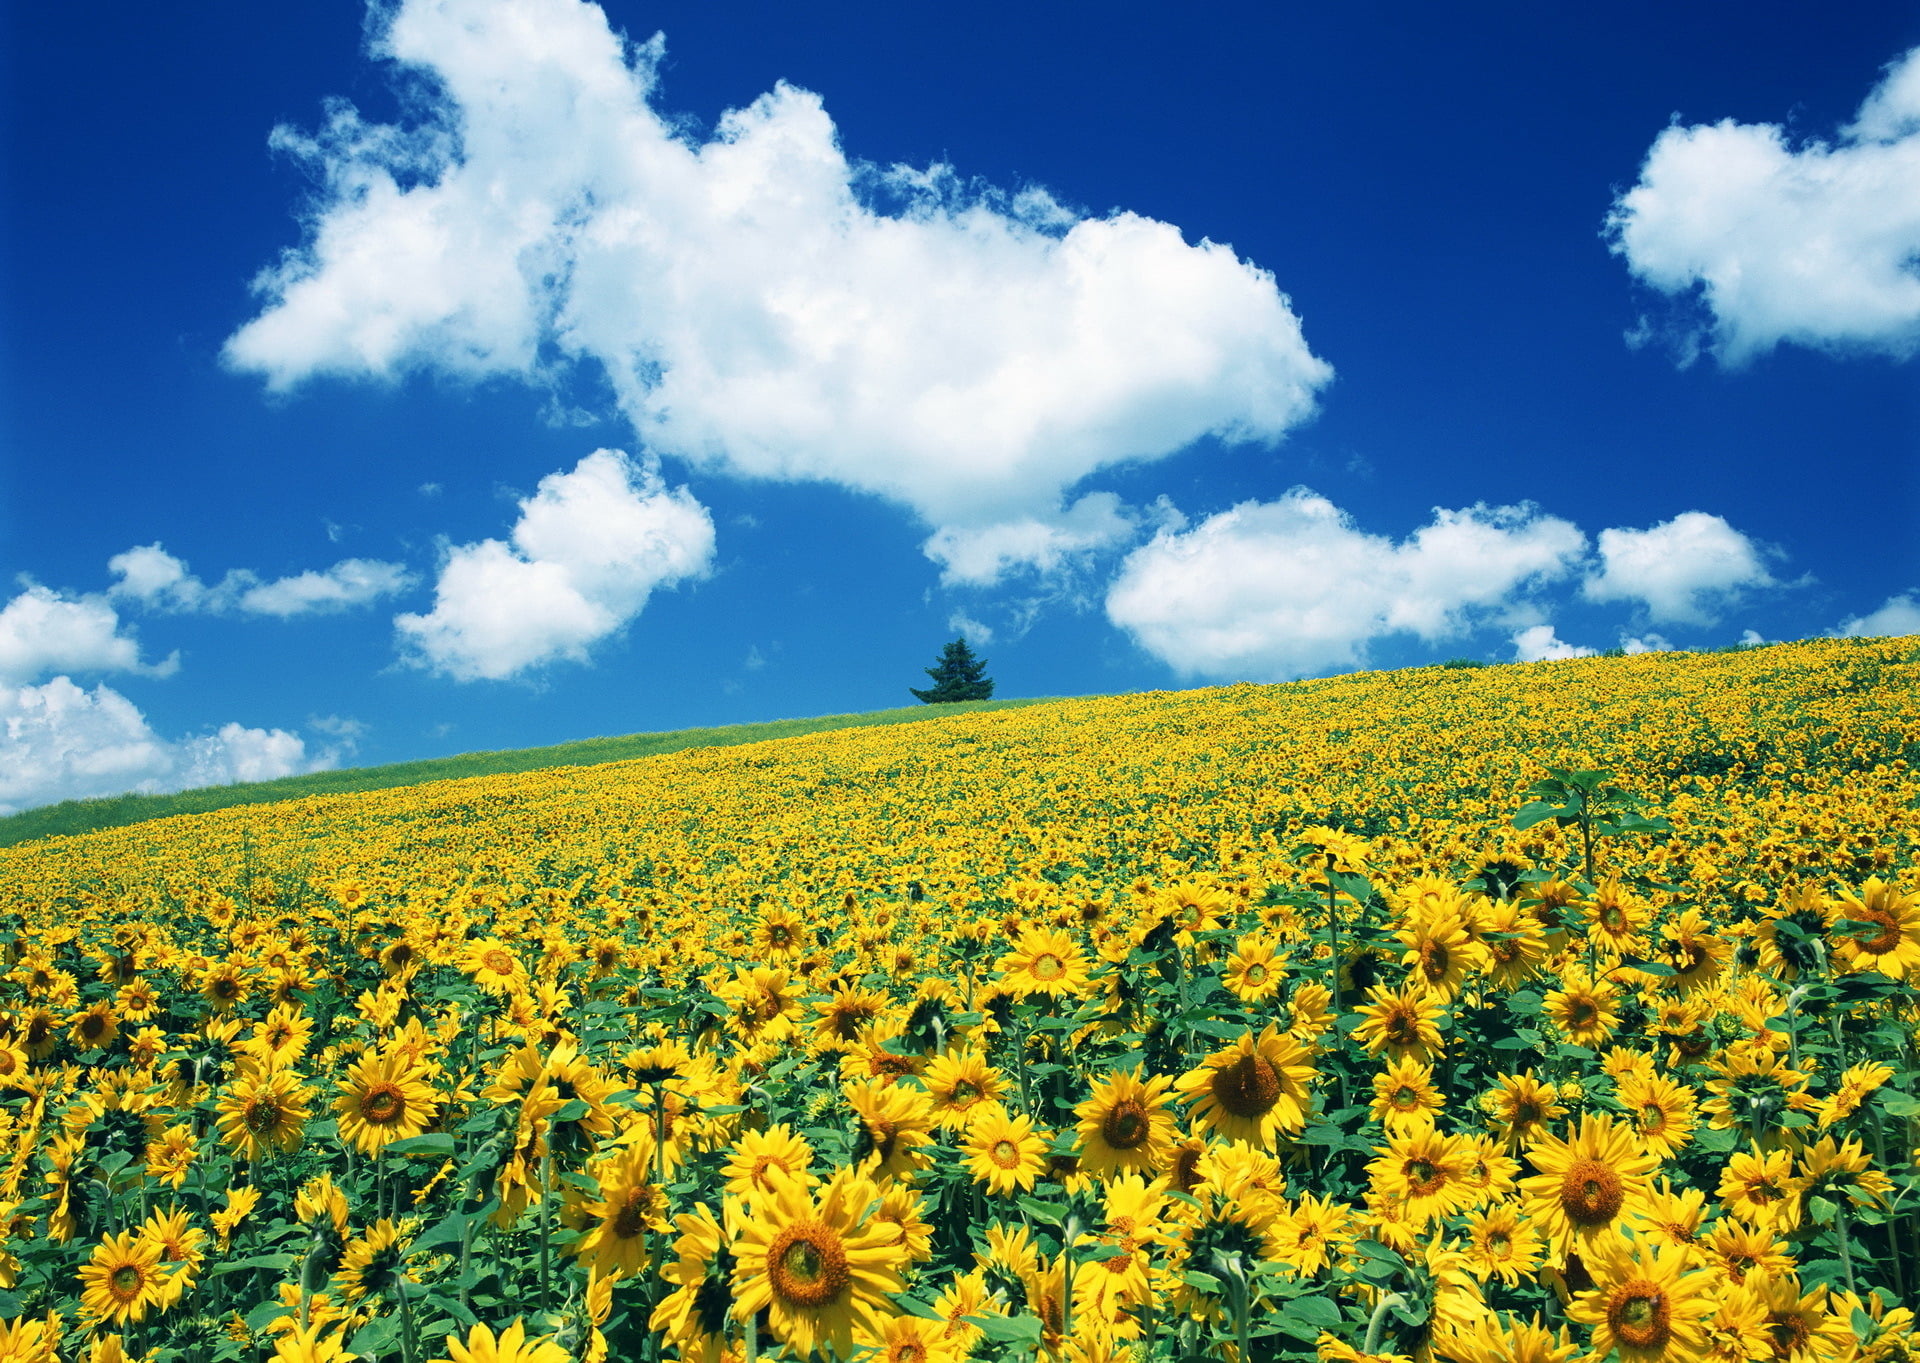 sunflower field, sunflowers, almost van Gogh, nature, yellow